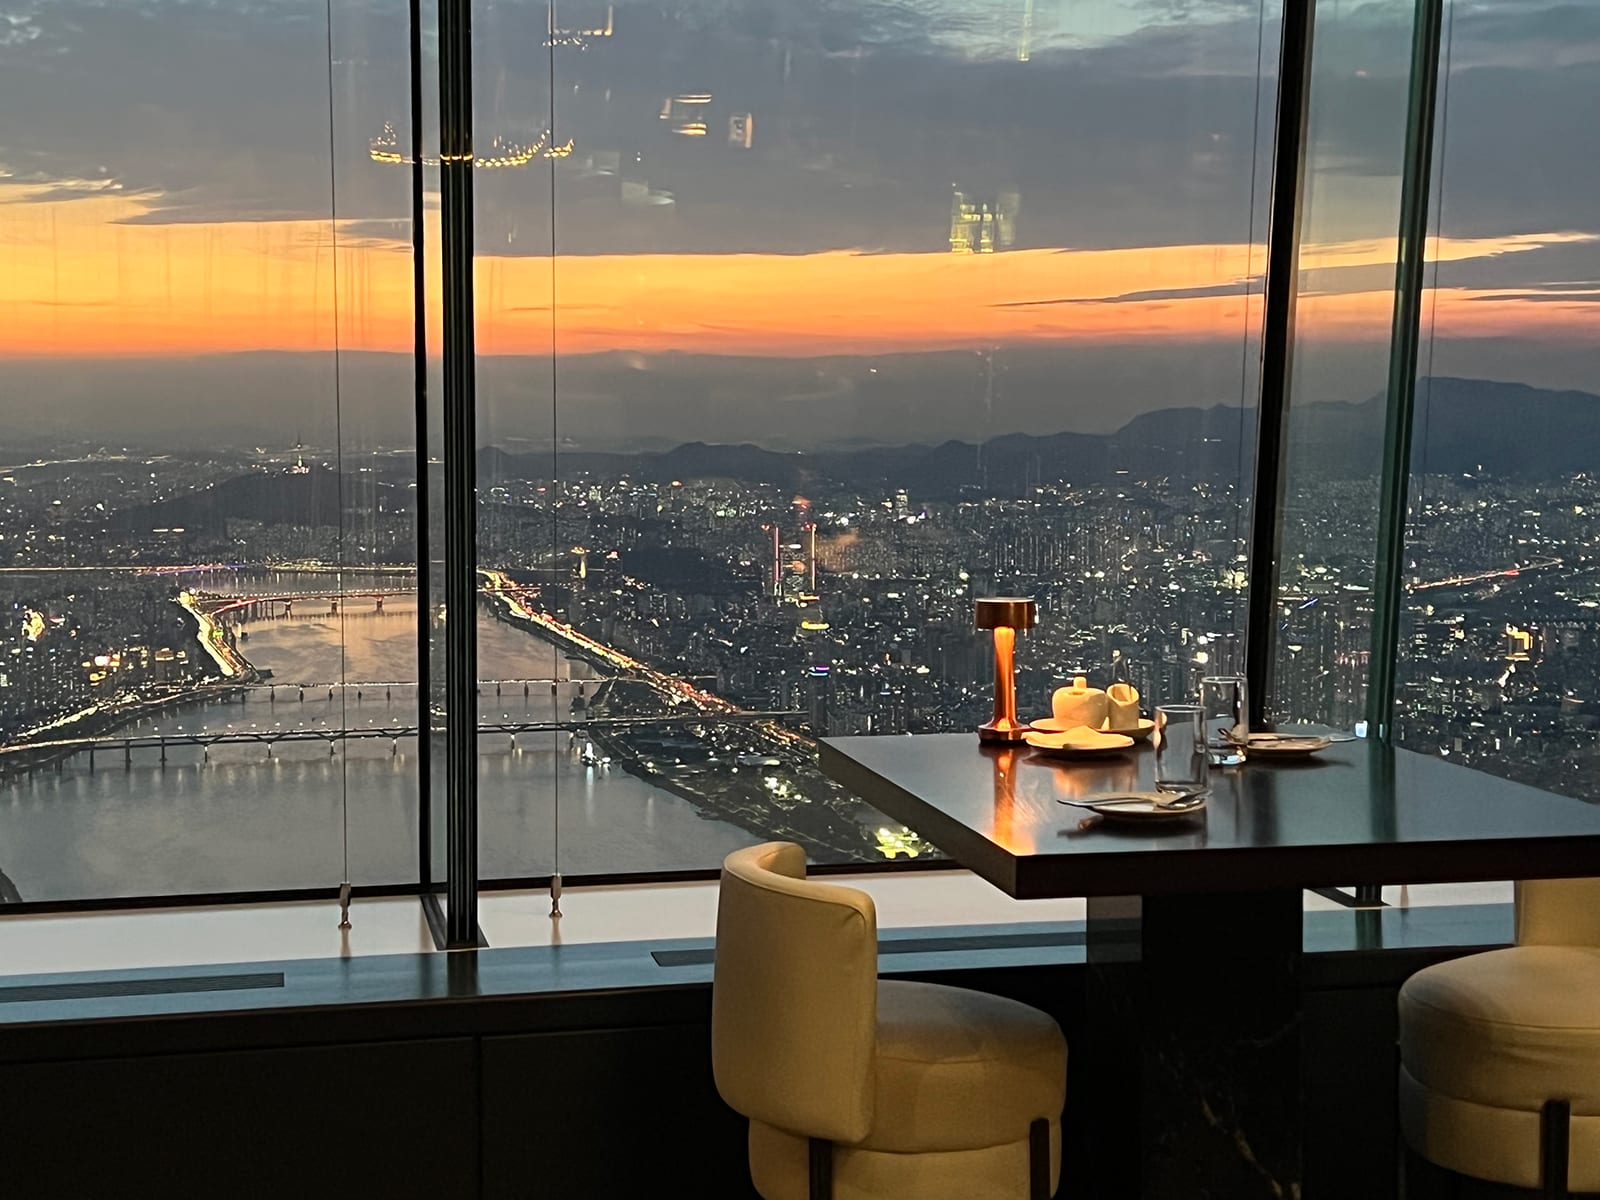 على ارتفاع ألفي قدم تقريبًا.. تجربة طعام ساحرة في أعلى مطعم بكوريا الجنوبية